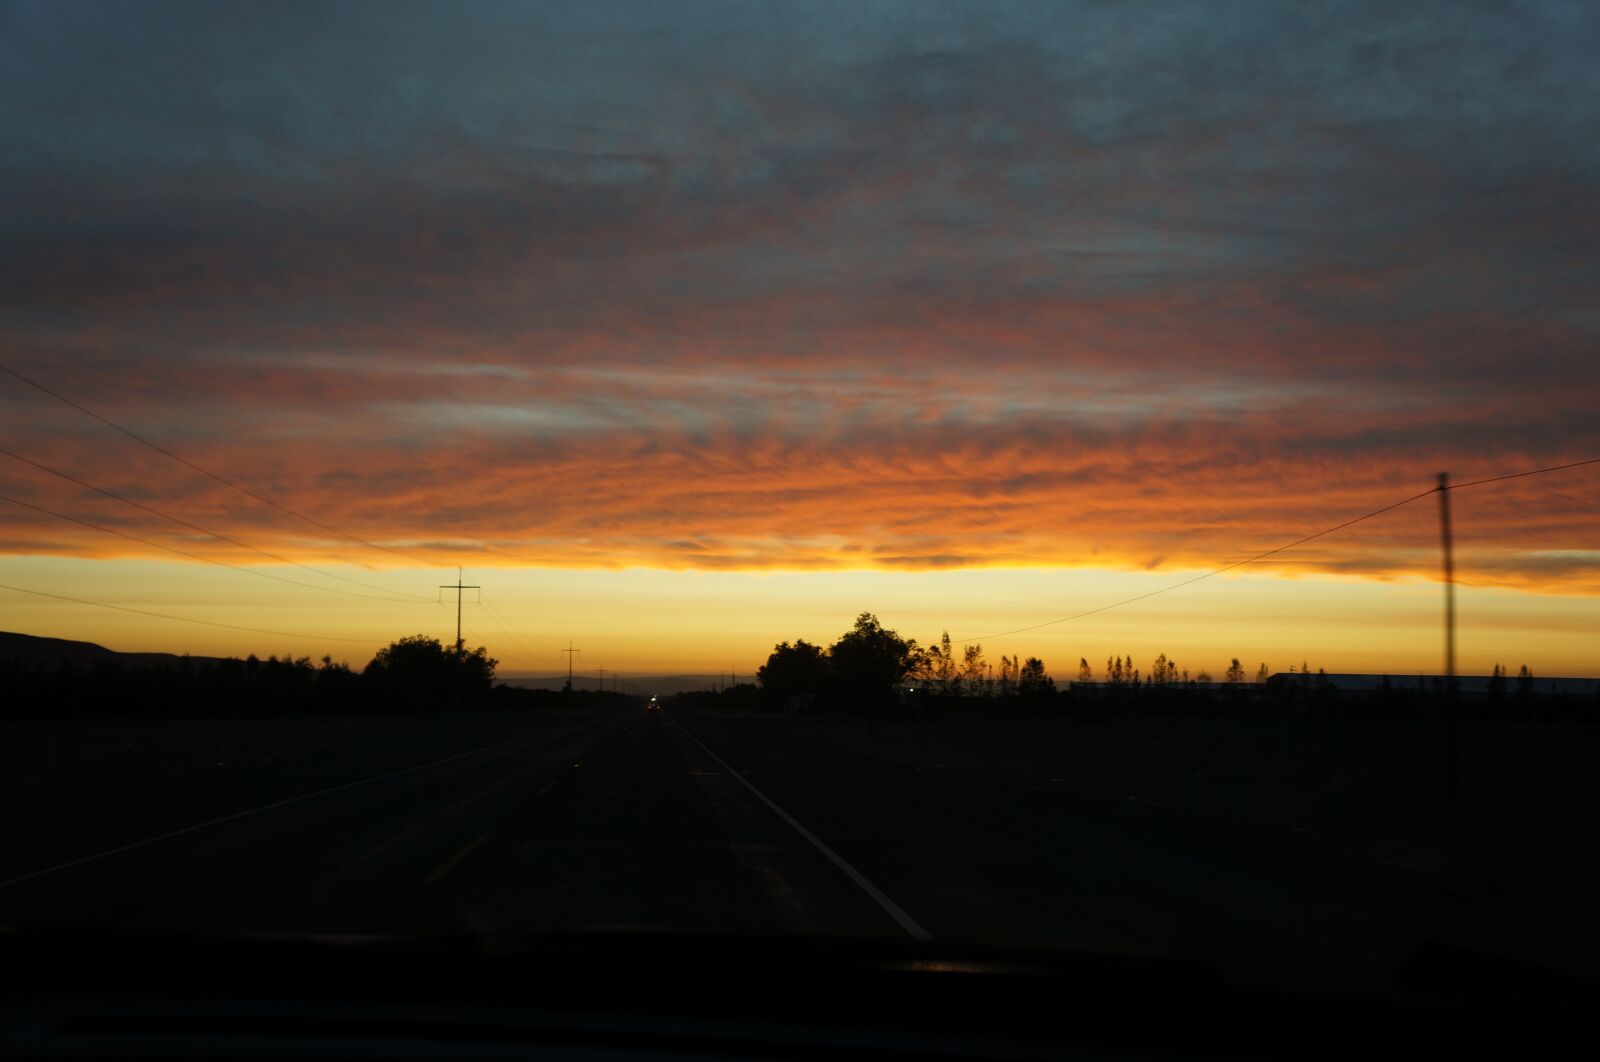 Sony Alpha NEX-5N sample photo. Landscape, sunset, sky photography